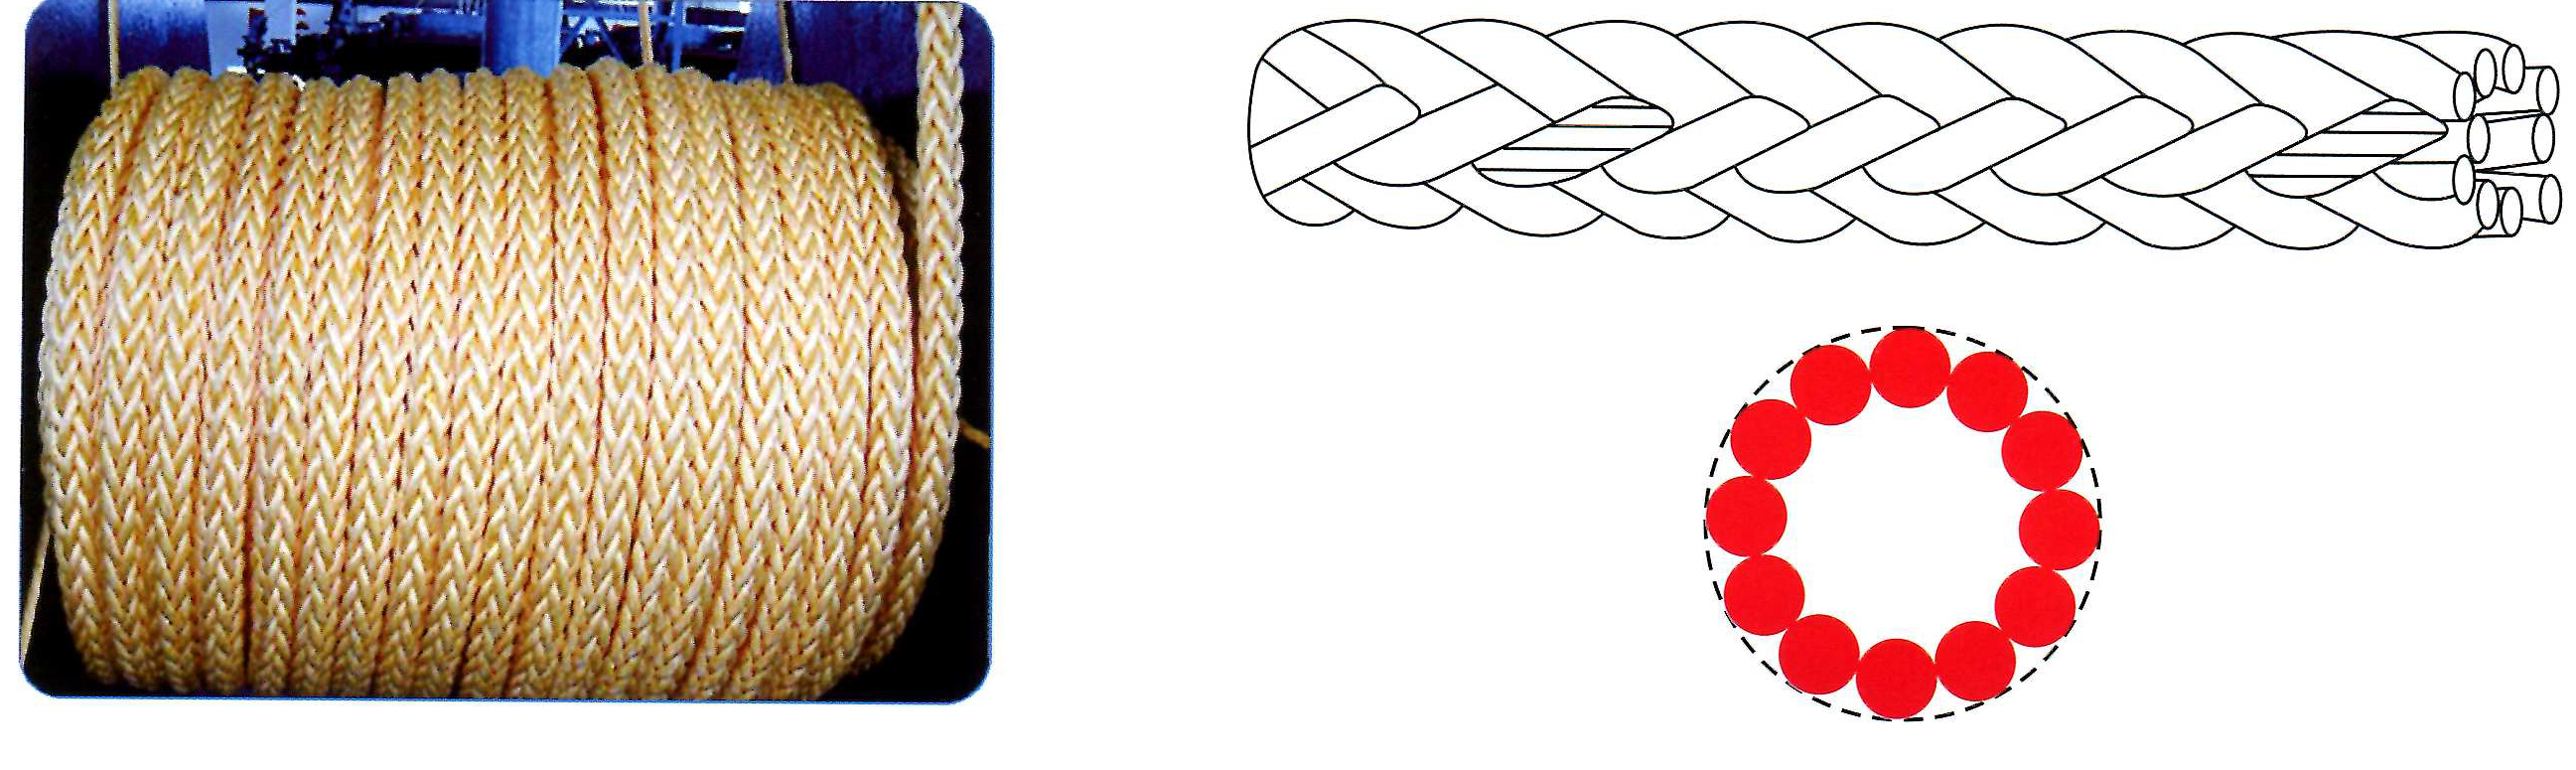 12 strand rope 